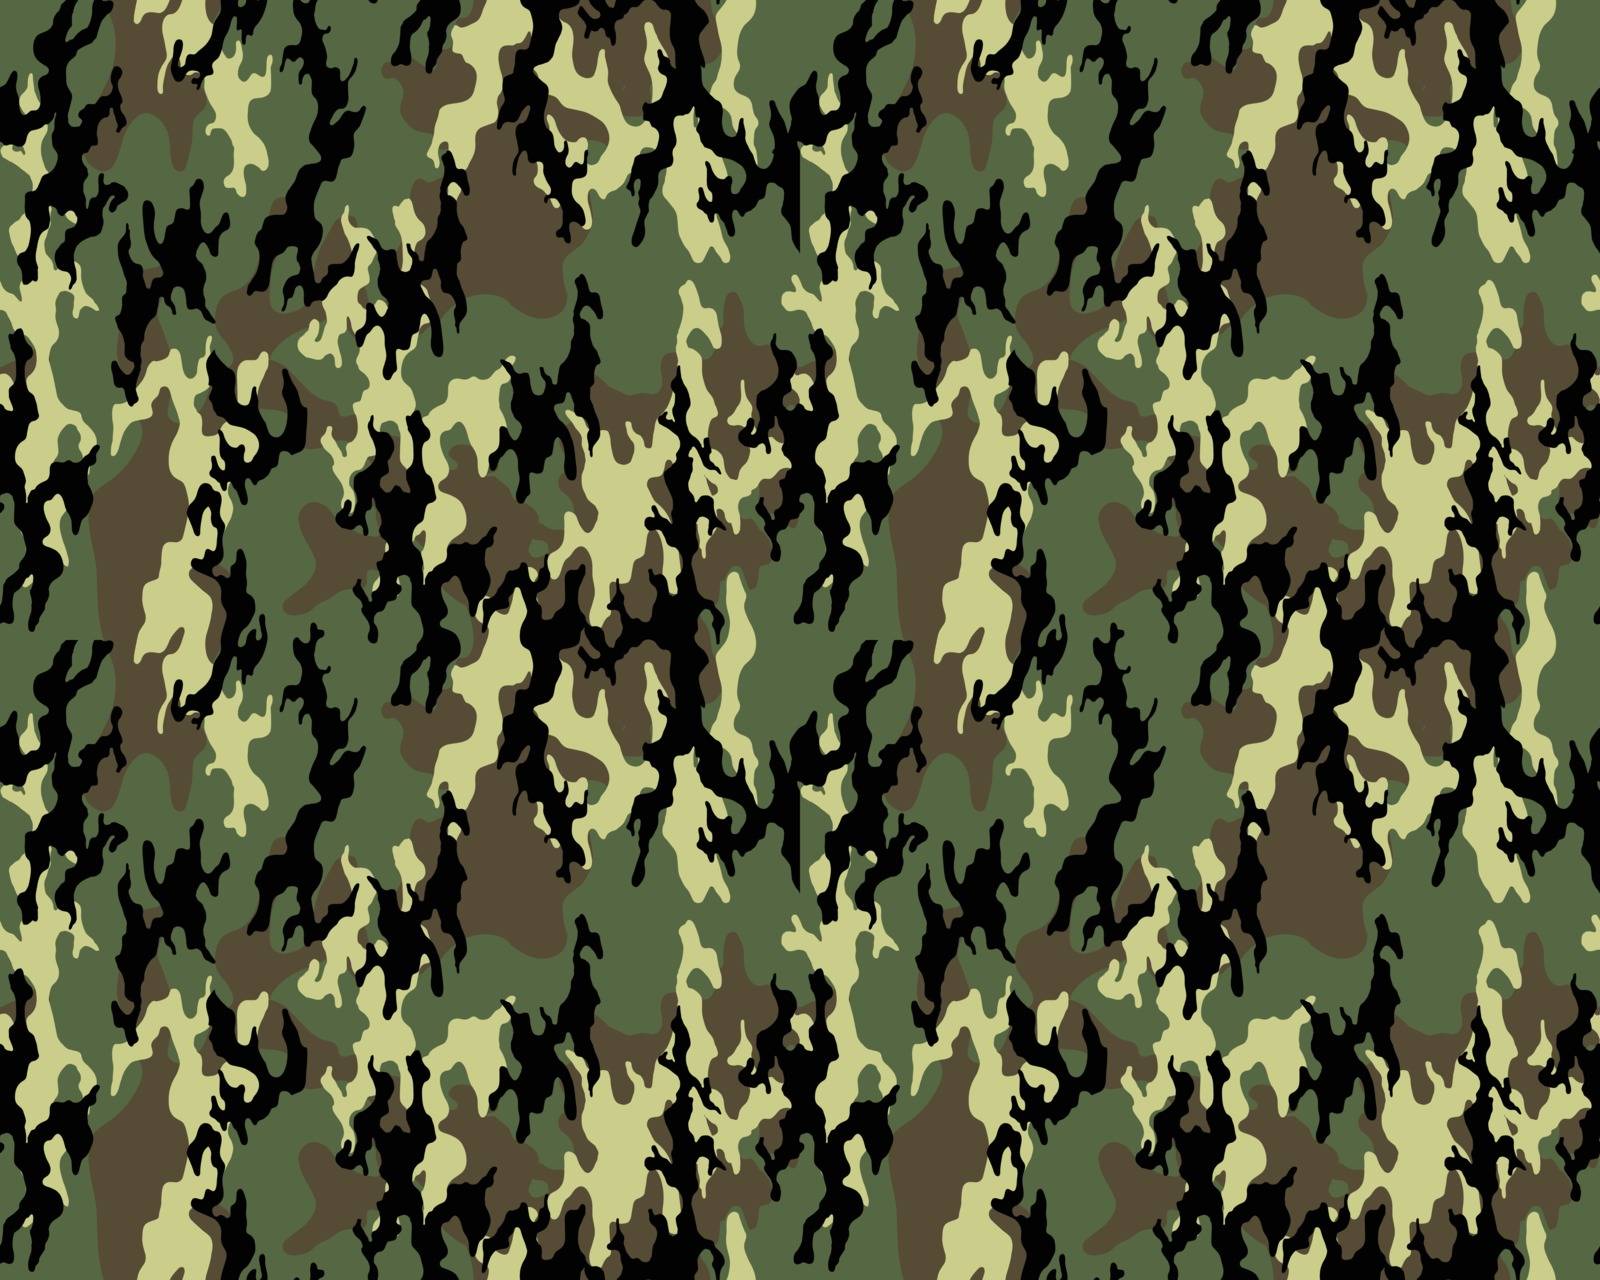 Camouflage pattern, Seamless by ratkomat